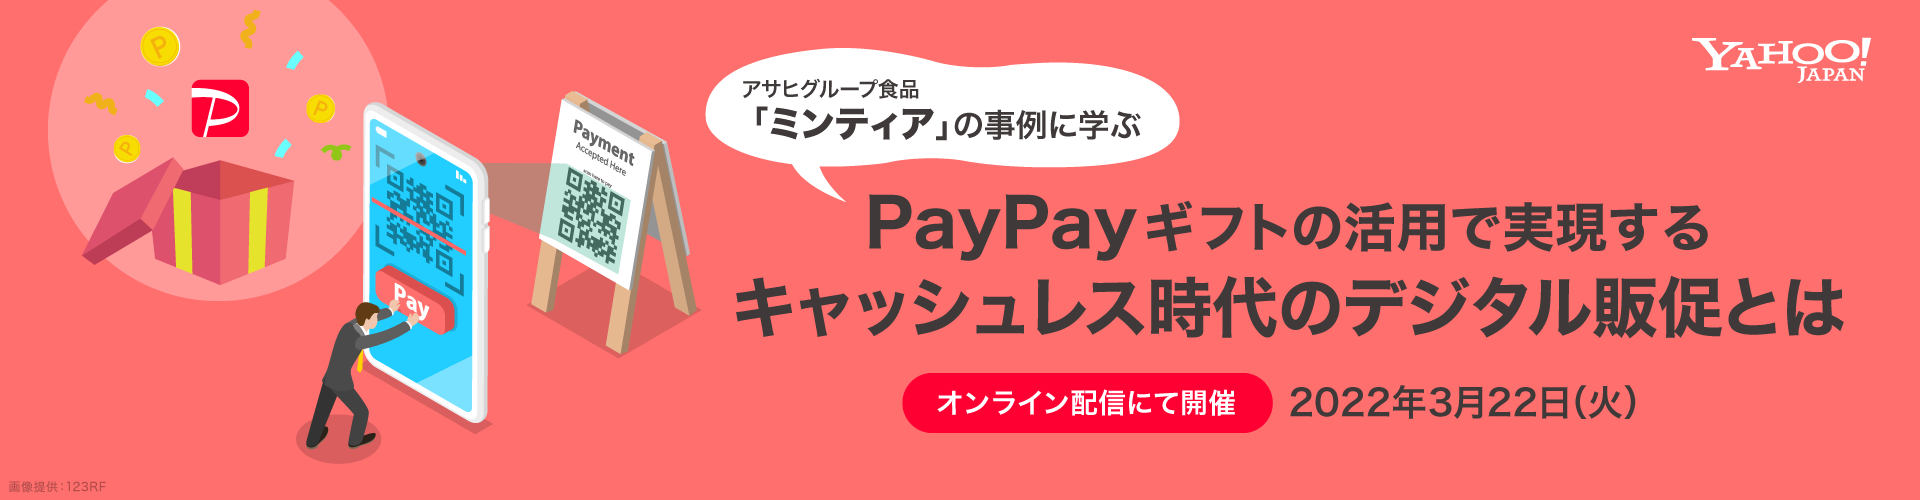 PayPayギフトの活用で実現するキャッシュレス時代のデジタル販促とは